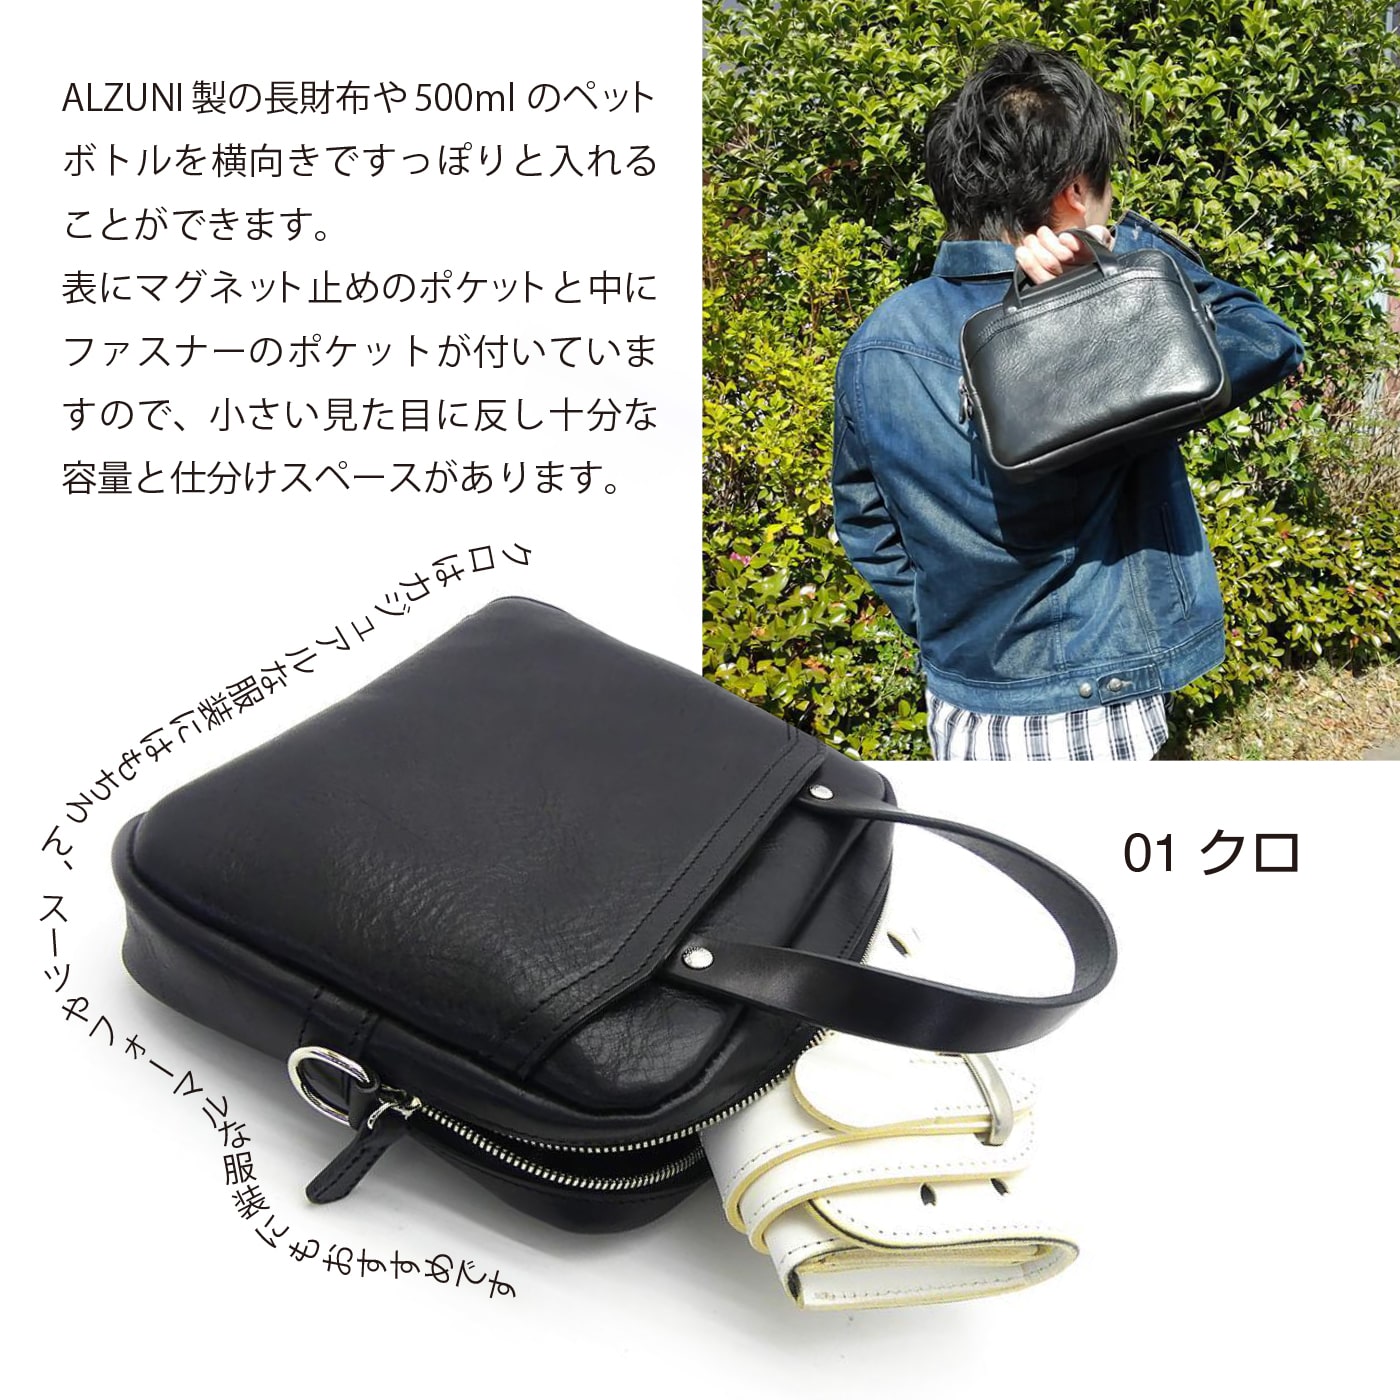 送料無料 日本製 ハンドメイド 本革 ALZUNI ブランド バッグ ブリーフケース メンズカバン バッグ bag ミニ 小さい コンパクト